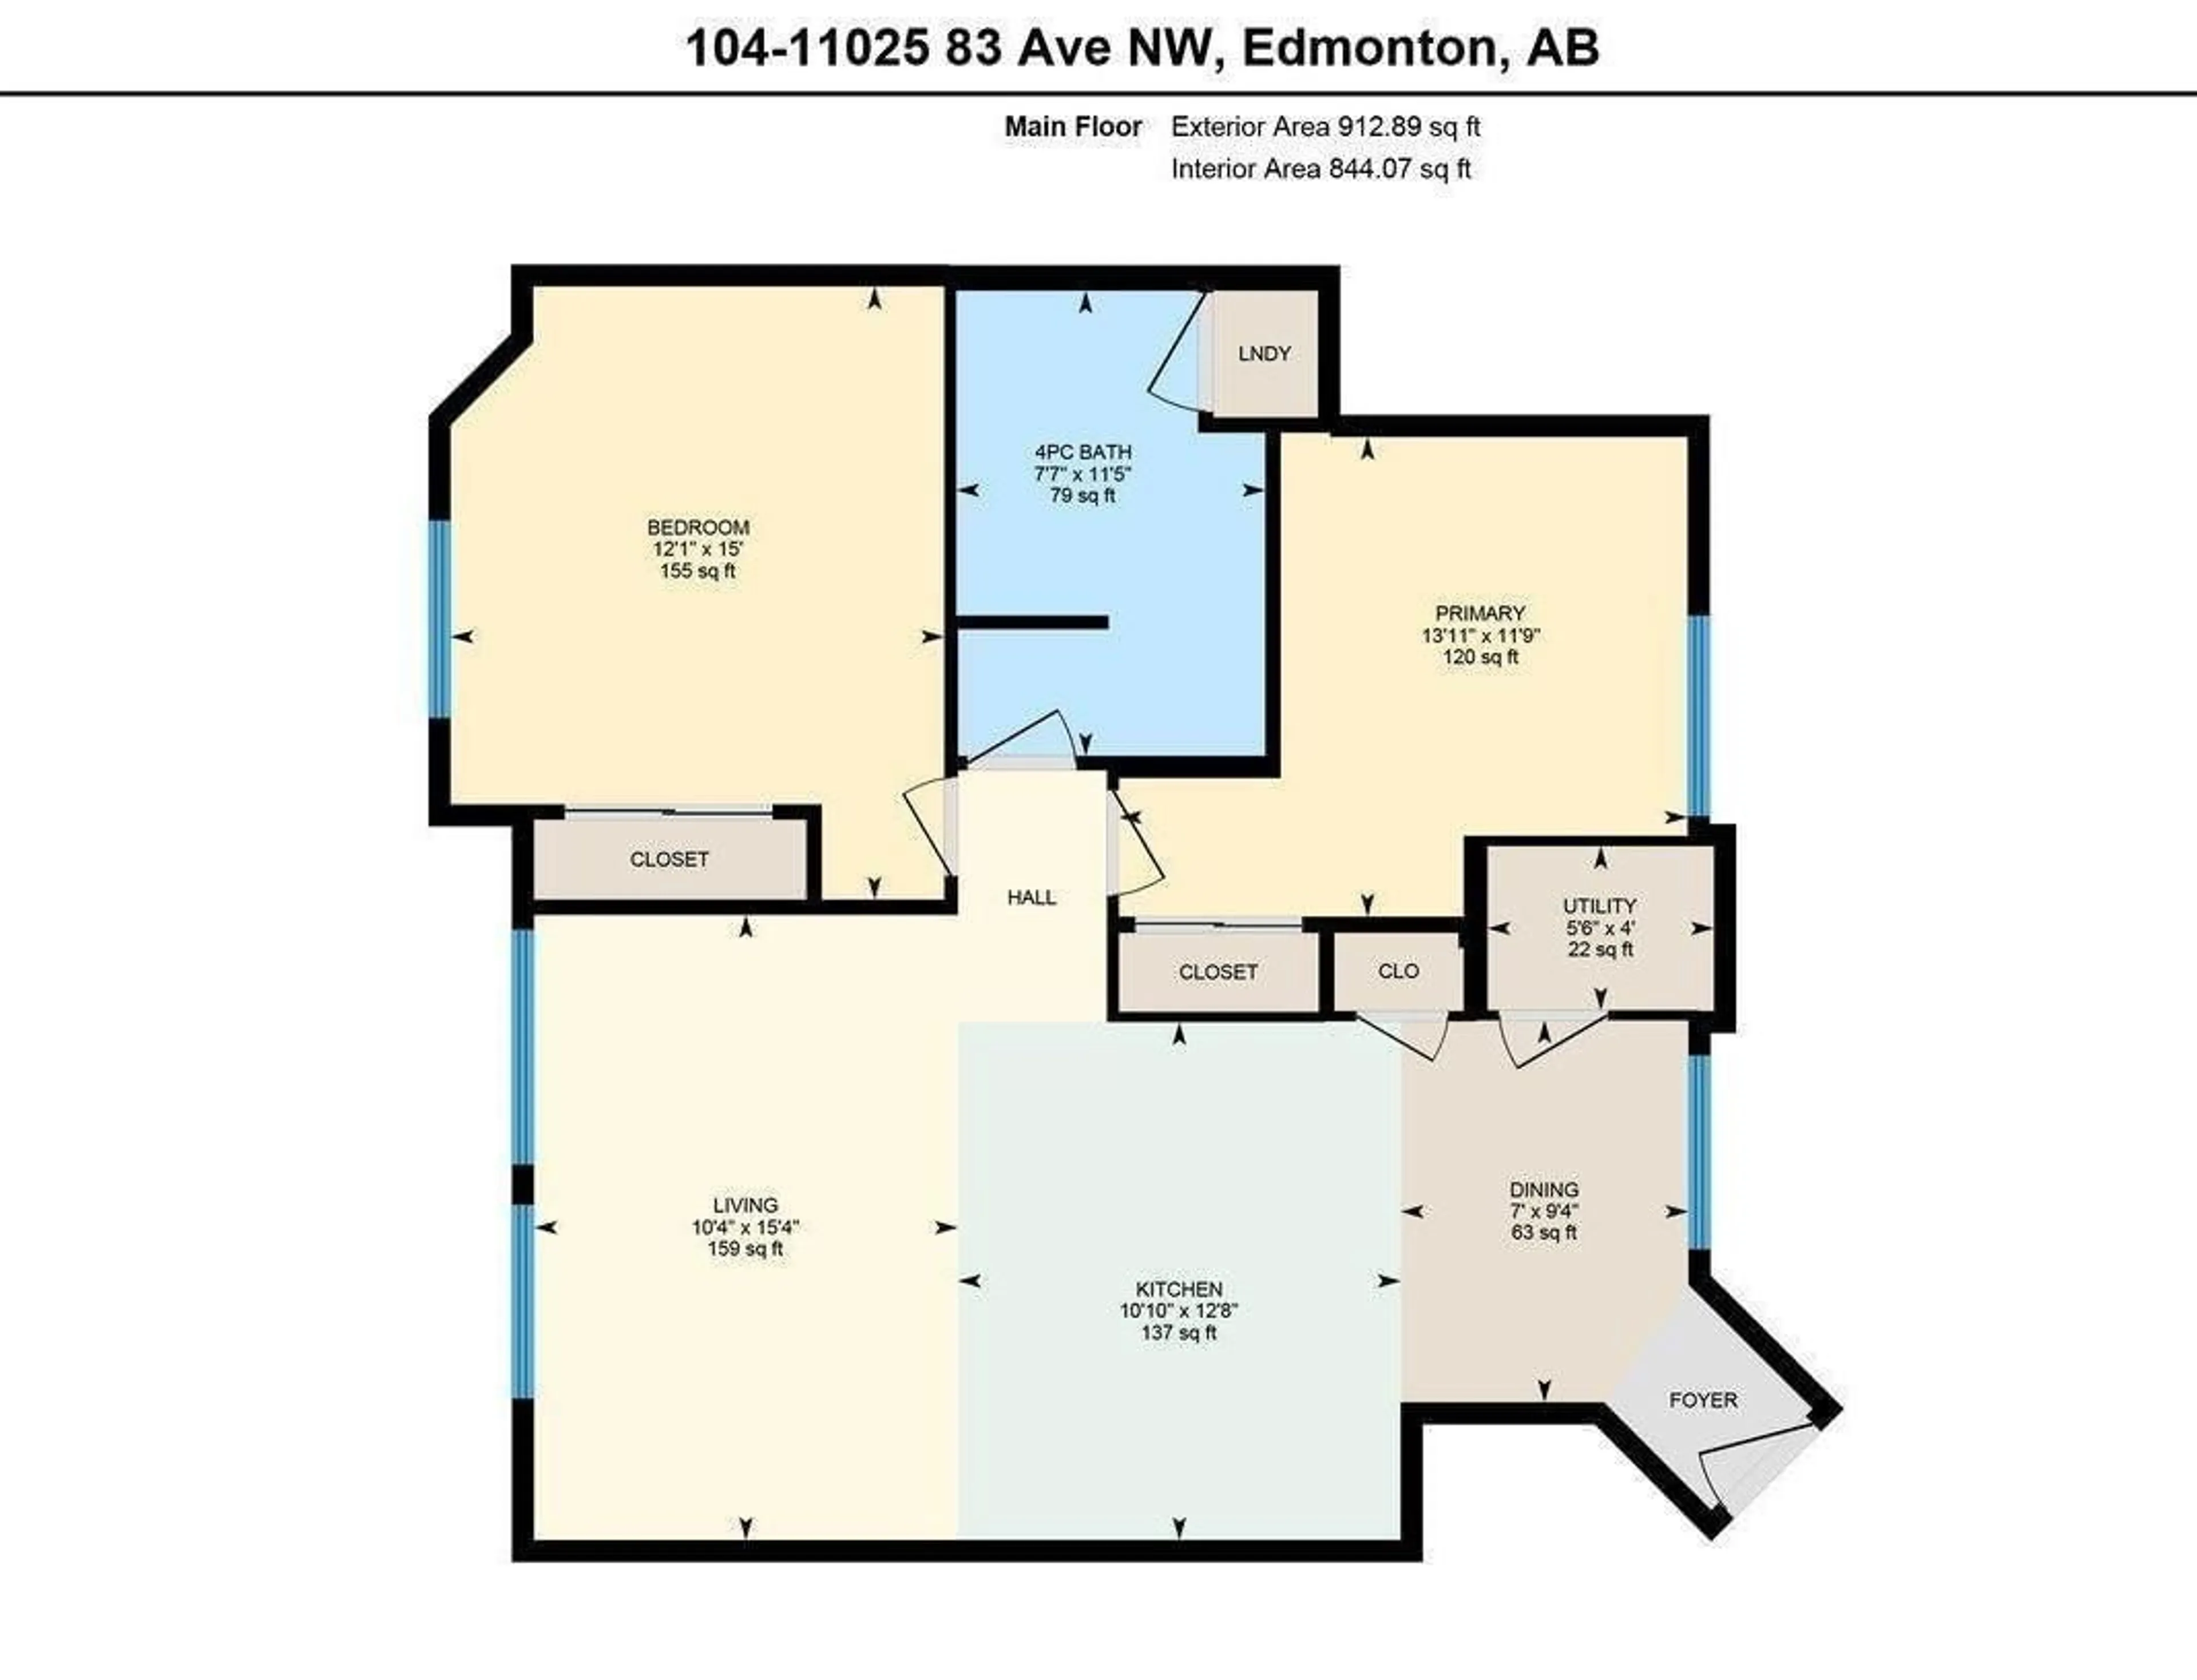 Floor plan for #104 11025 83 AV NW, Edmonton Alberta T6G2V5